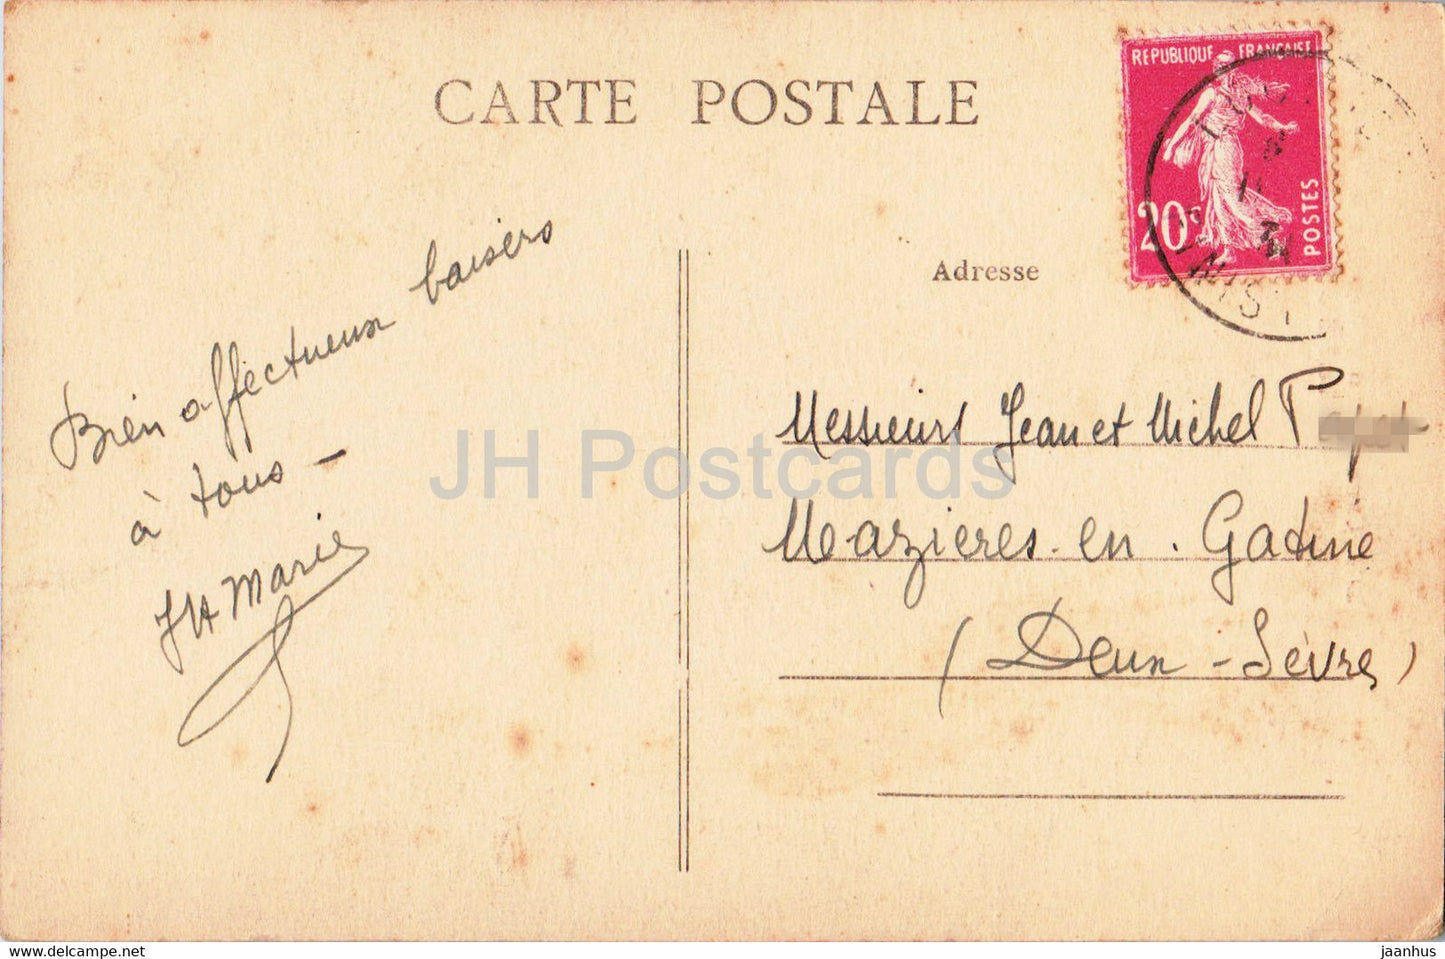 Concarneau - Entrée de la Ville Close Le Beffro - 3976 - carte postale ancienne - France - occasion